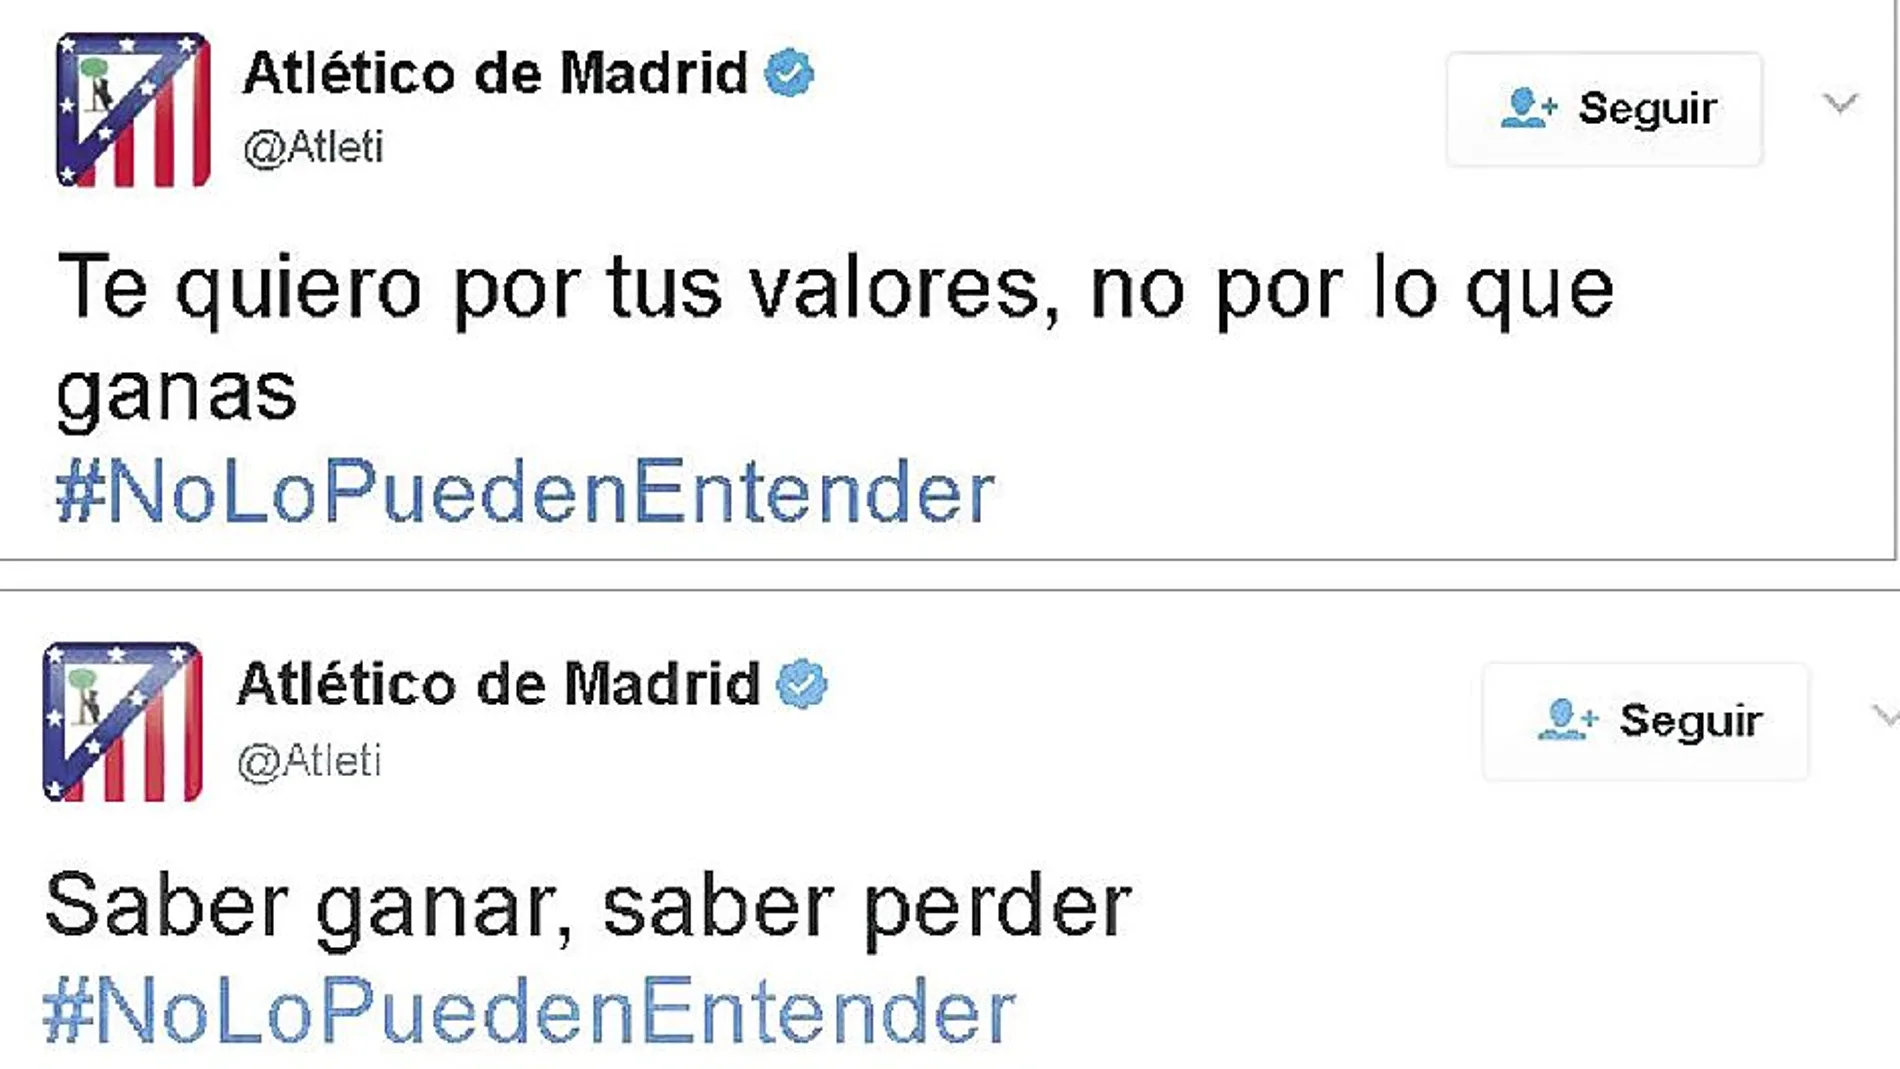 Tuits publicados por la cuenta oficial del Atlético de Madrid